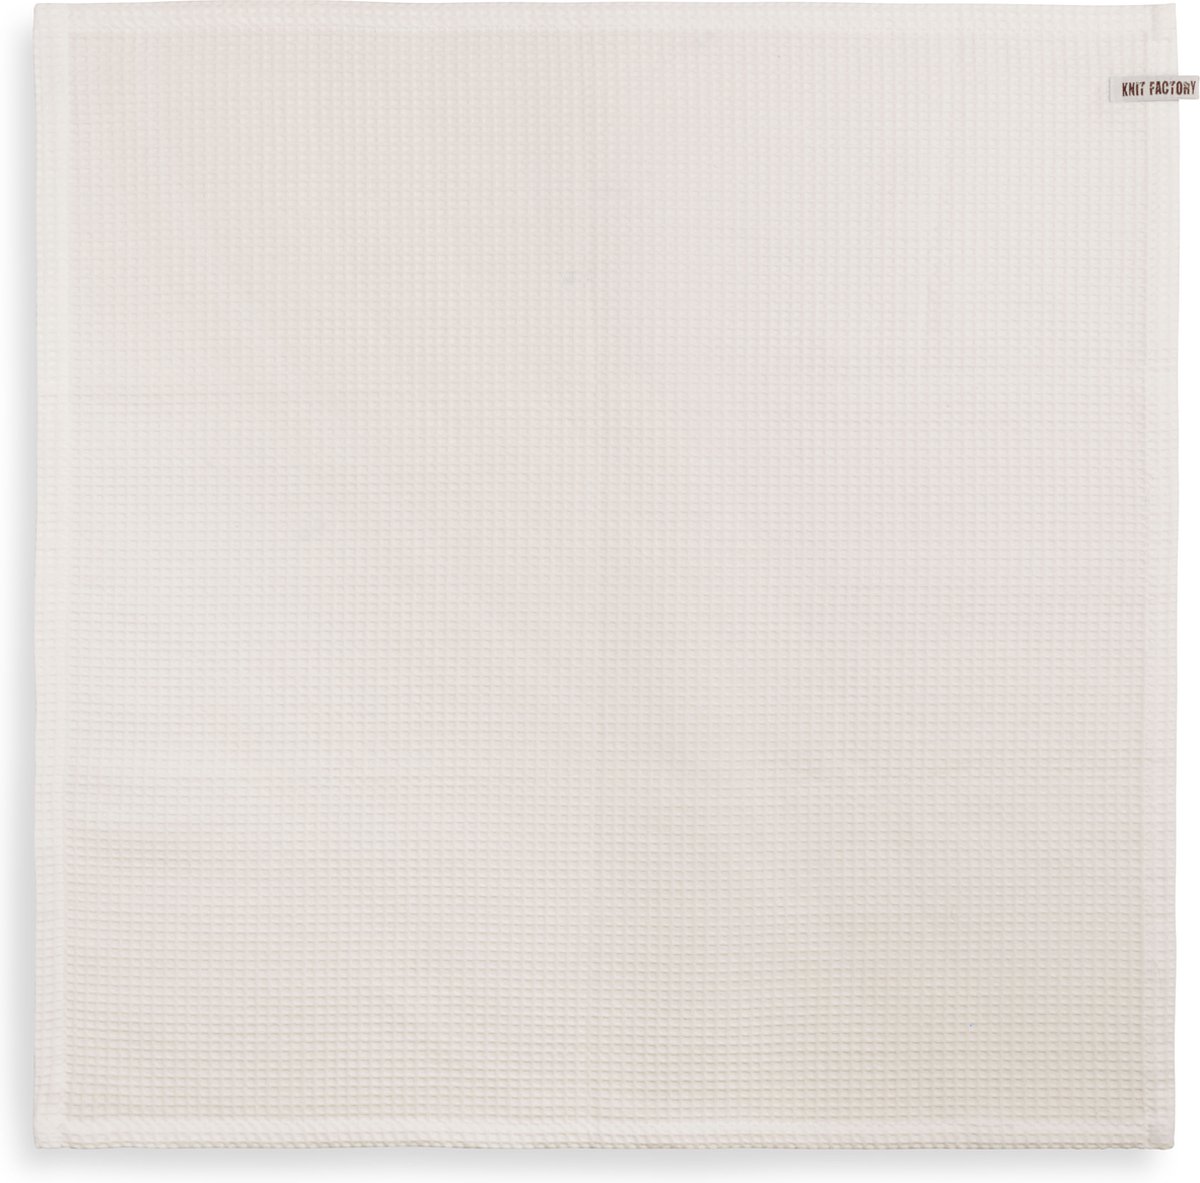 Knit Factory Theedoek - Poleerdoek - Keuken Droogdoek Clint - Ecru - 65x65 cm - 100% Katoen